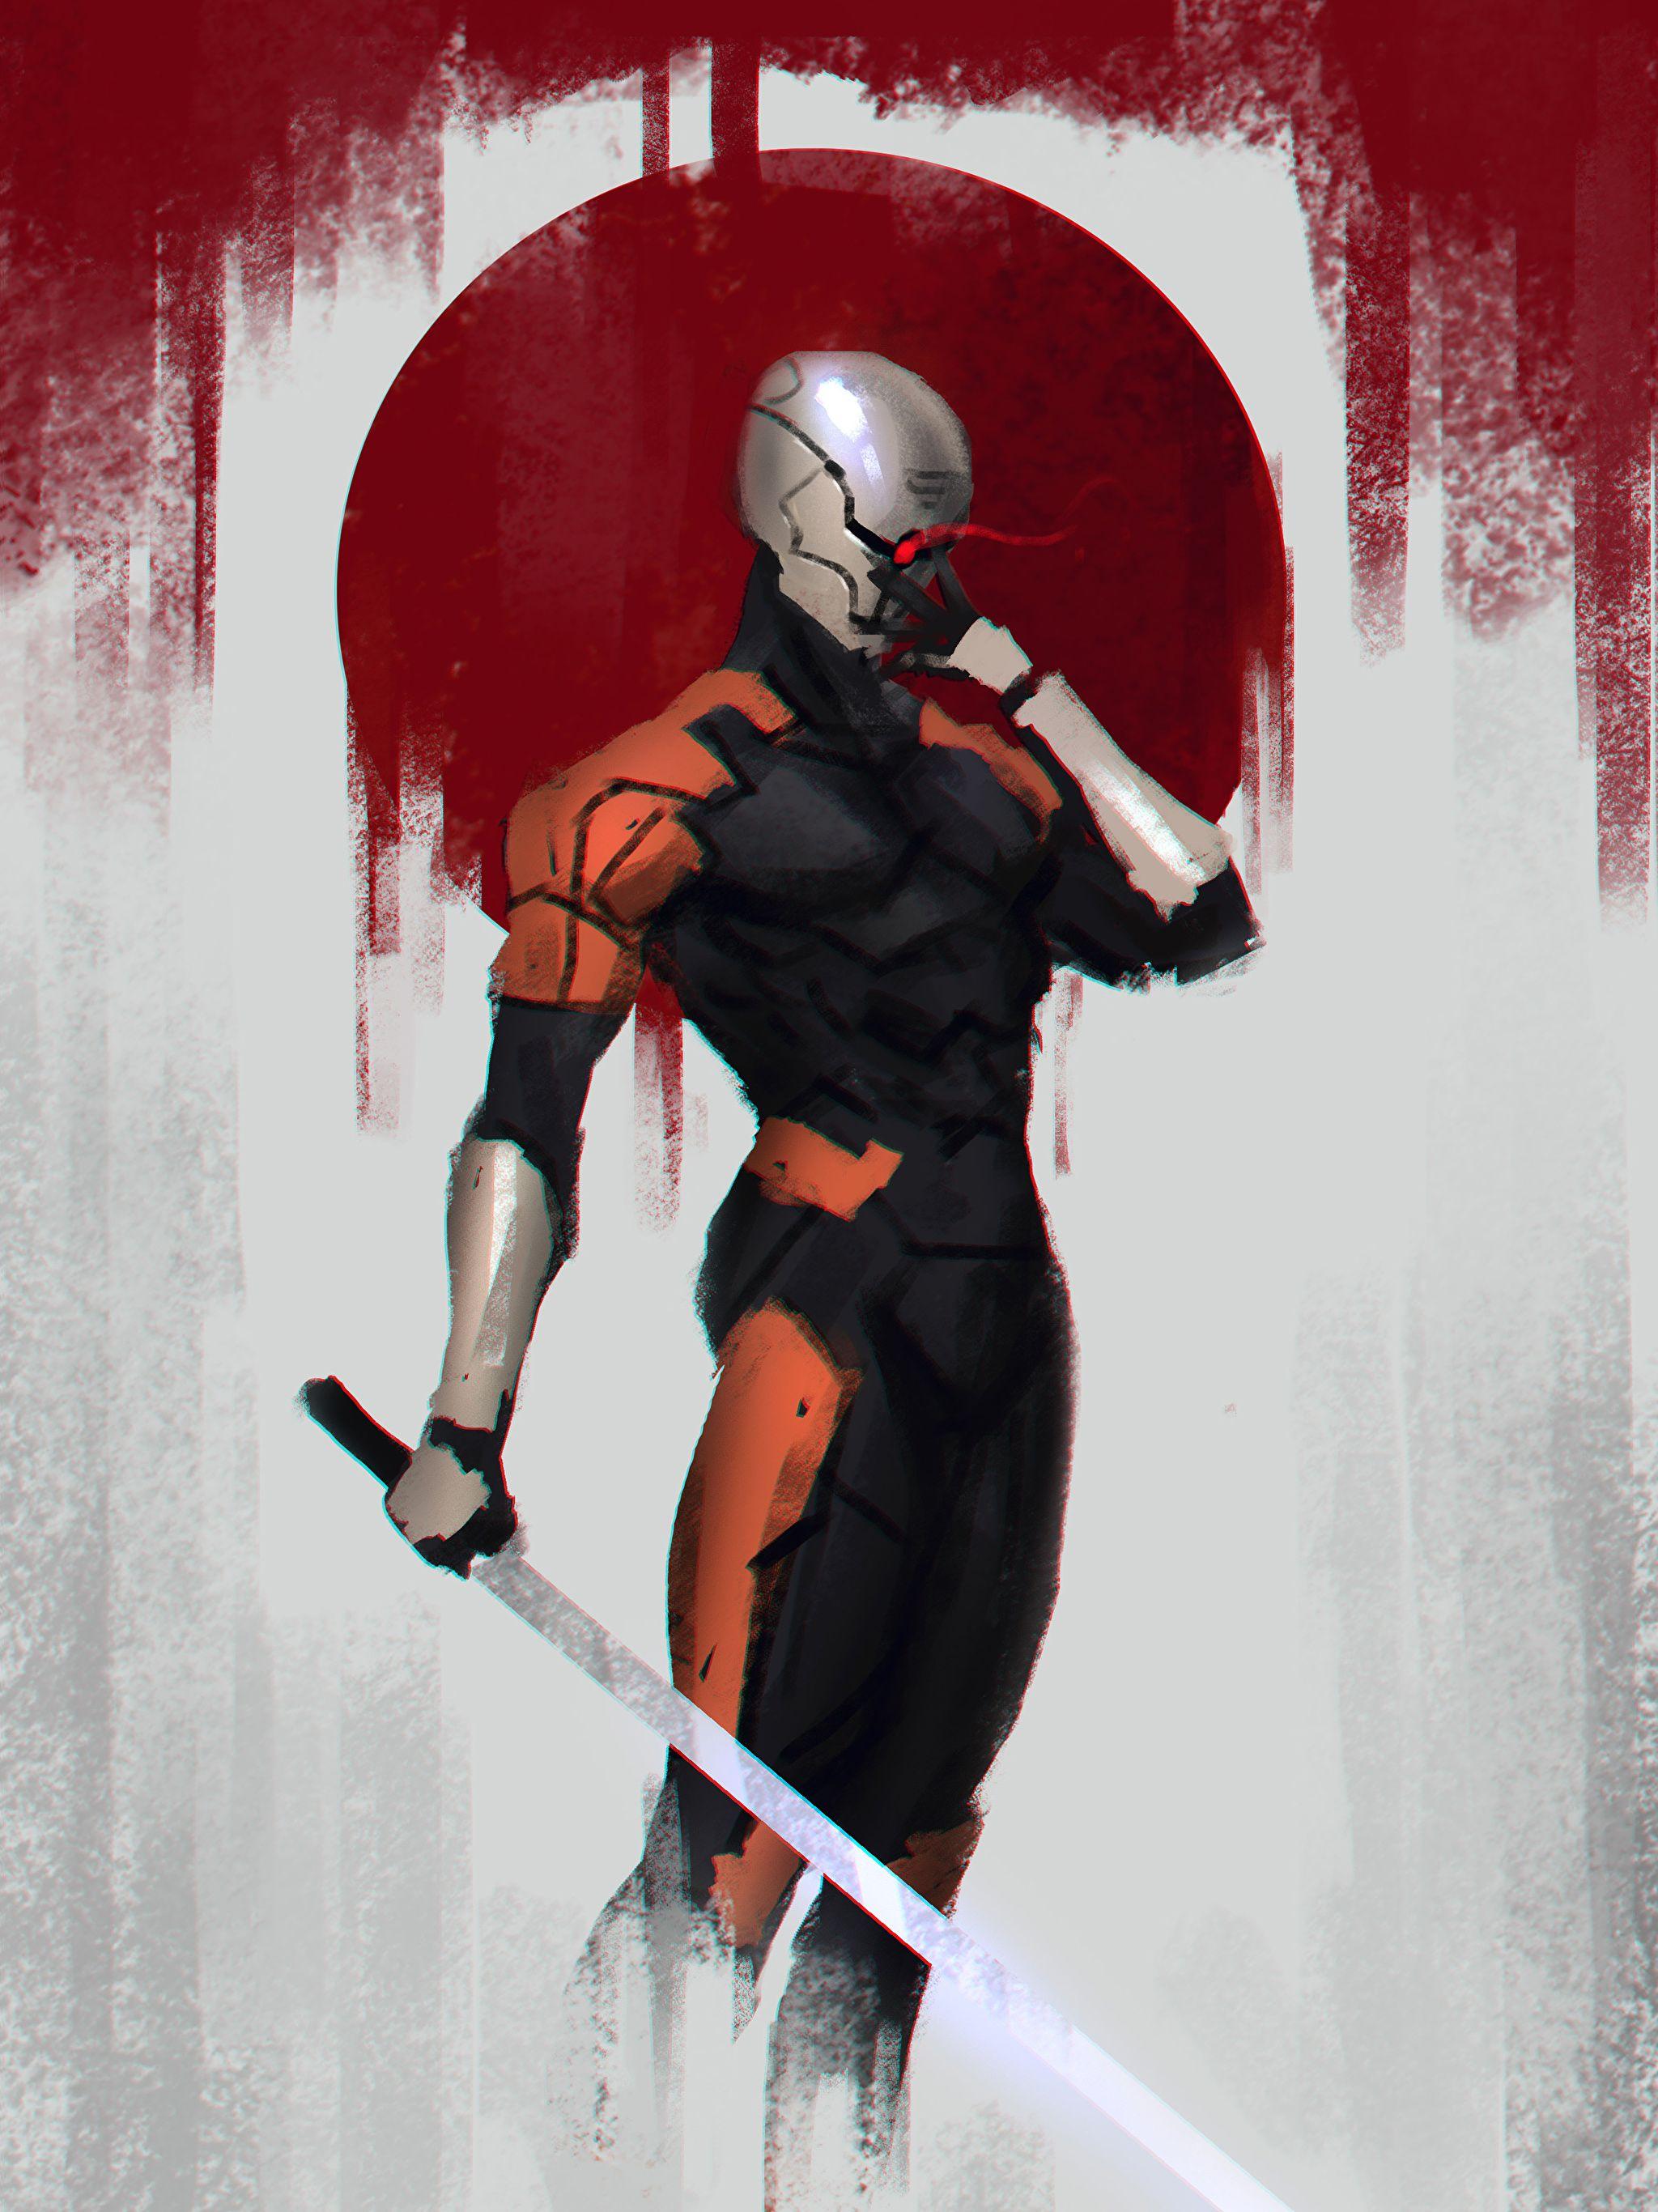 Cyborg Ninja Wallpapers - Top Free Cyborg Ninja Backgrounds ...